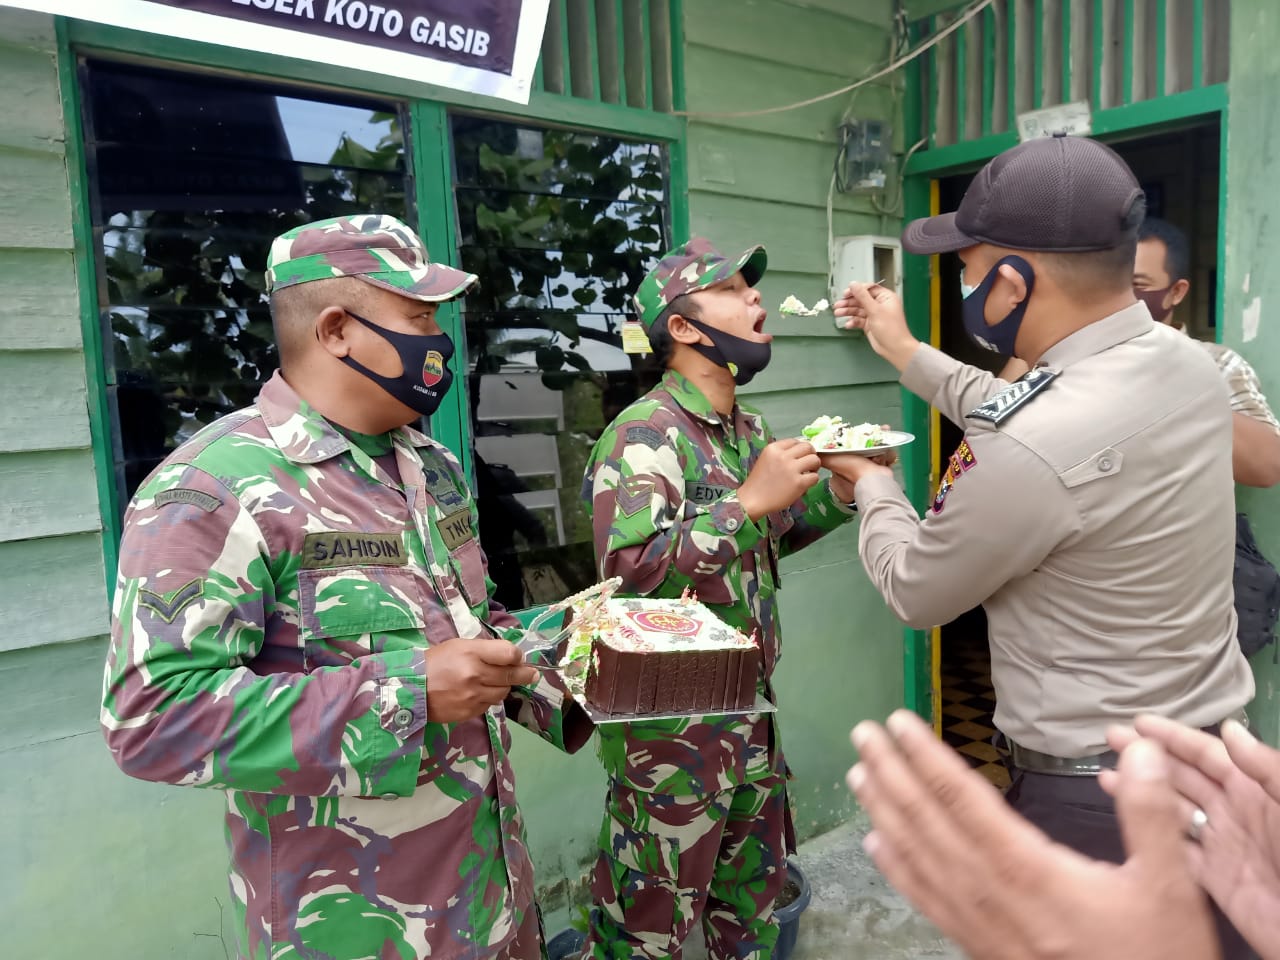 HUT TNI ke 75, Polsek Koto Gasib Sambangi Kantor Bhabinsa Koramil 10 Perawang, Pangkalan Pisang